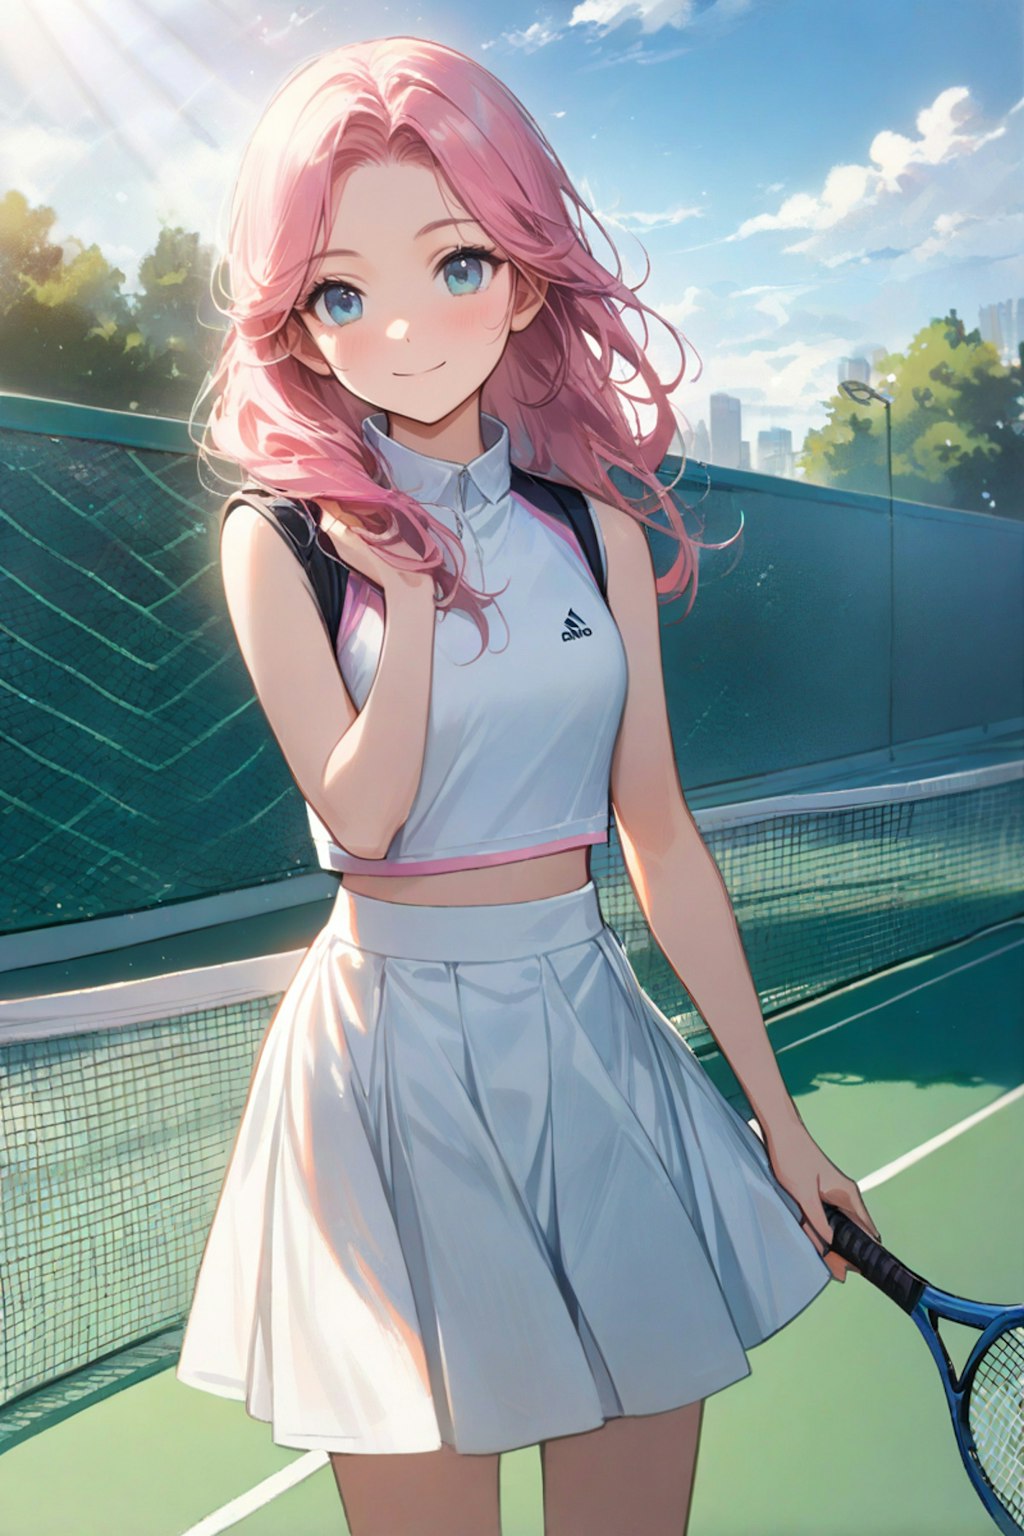 ピンク髪のテニス少女